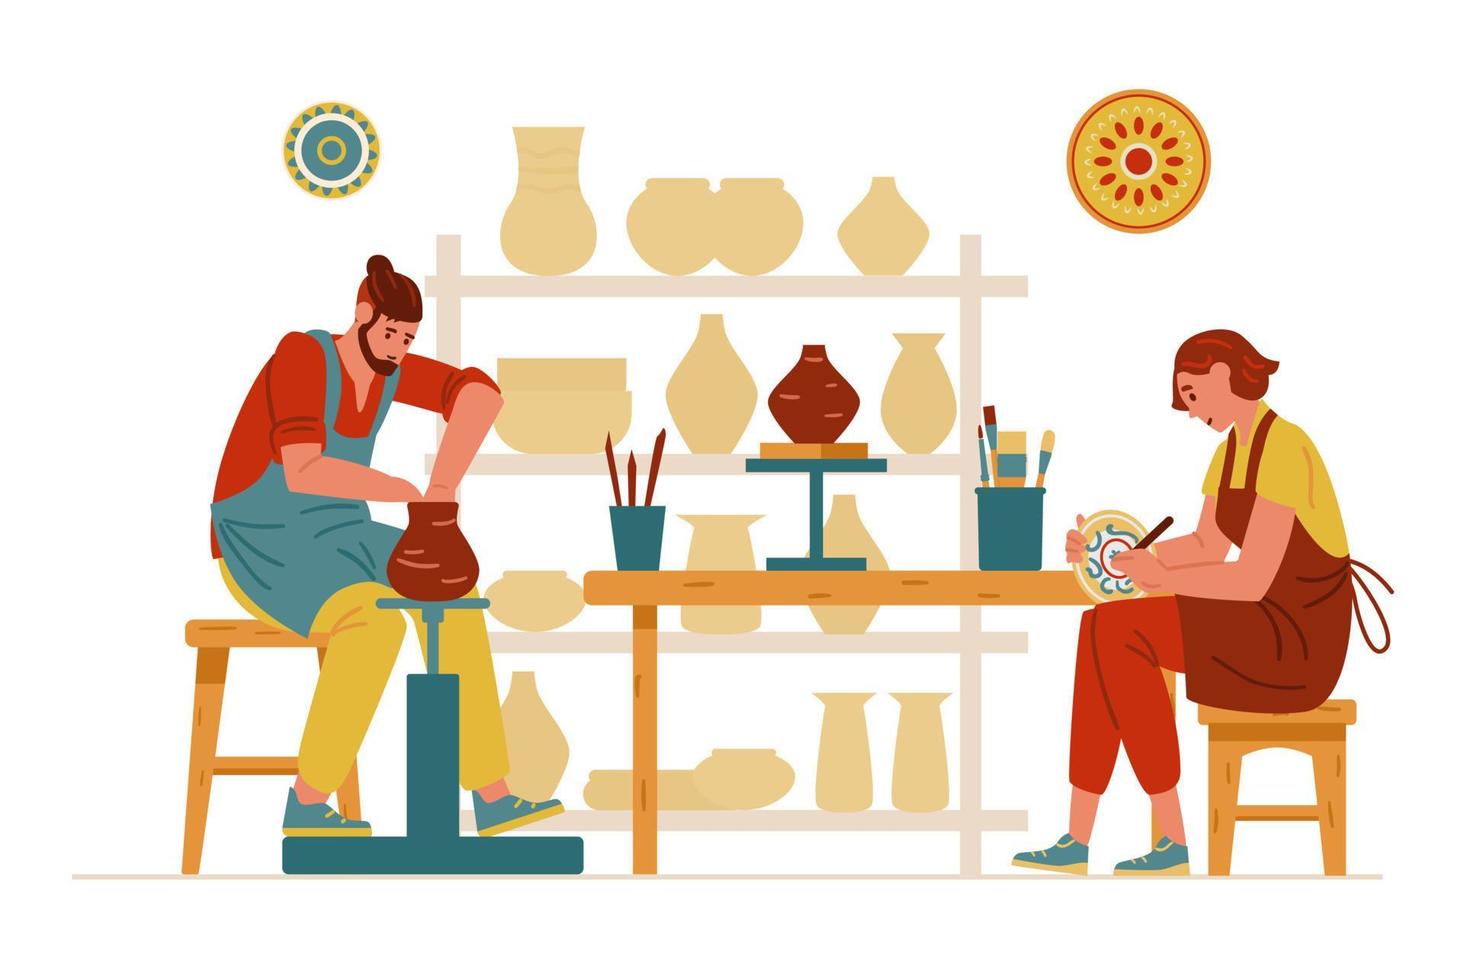 keramik studio interiör med keramik och människor som arbetar. man gör lerkruka, kvinna målar en maträtt. vektor illustration.